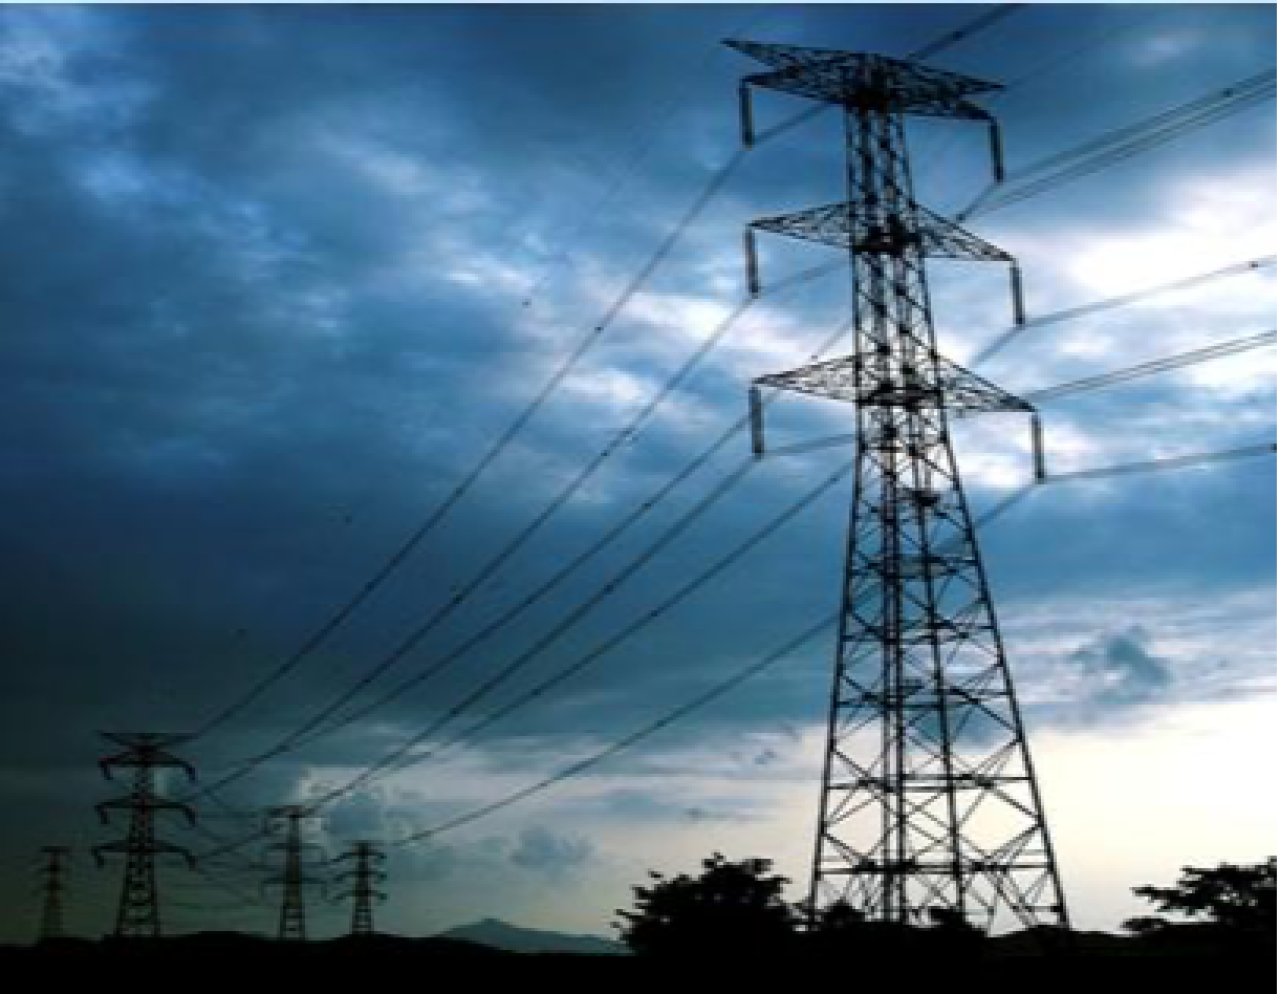 Հայաստանում էլեկտրաէներգիայի արտադրությունը նվազել է